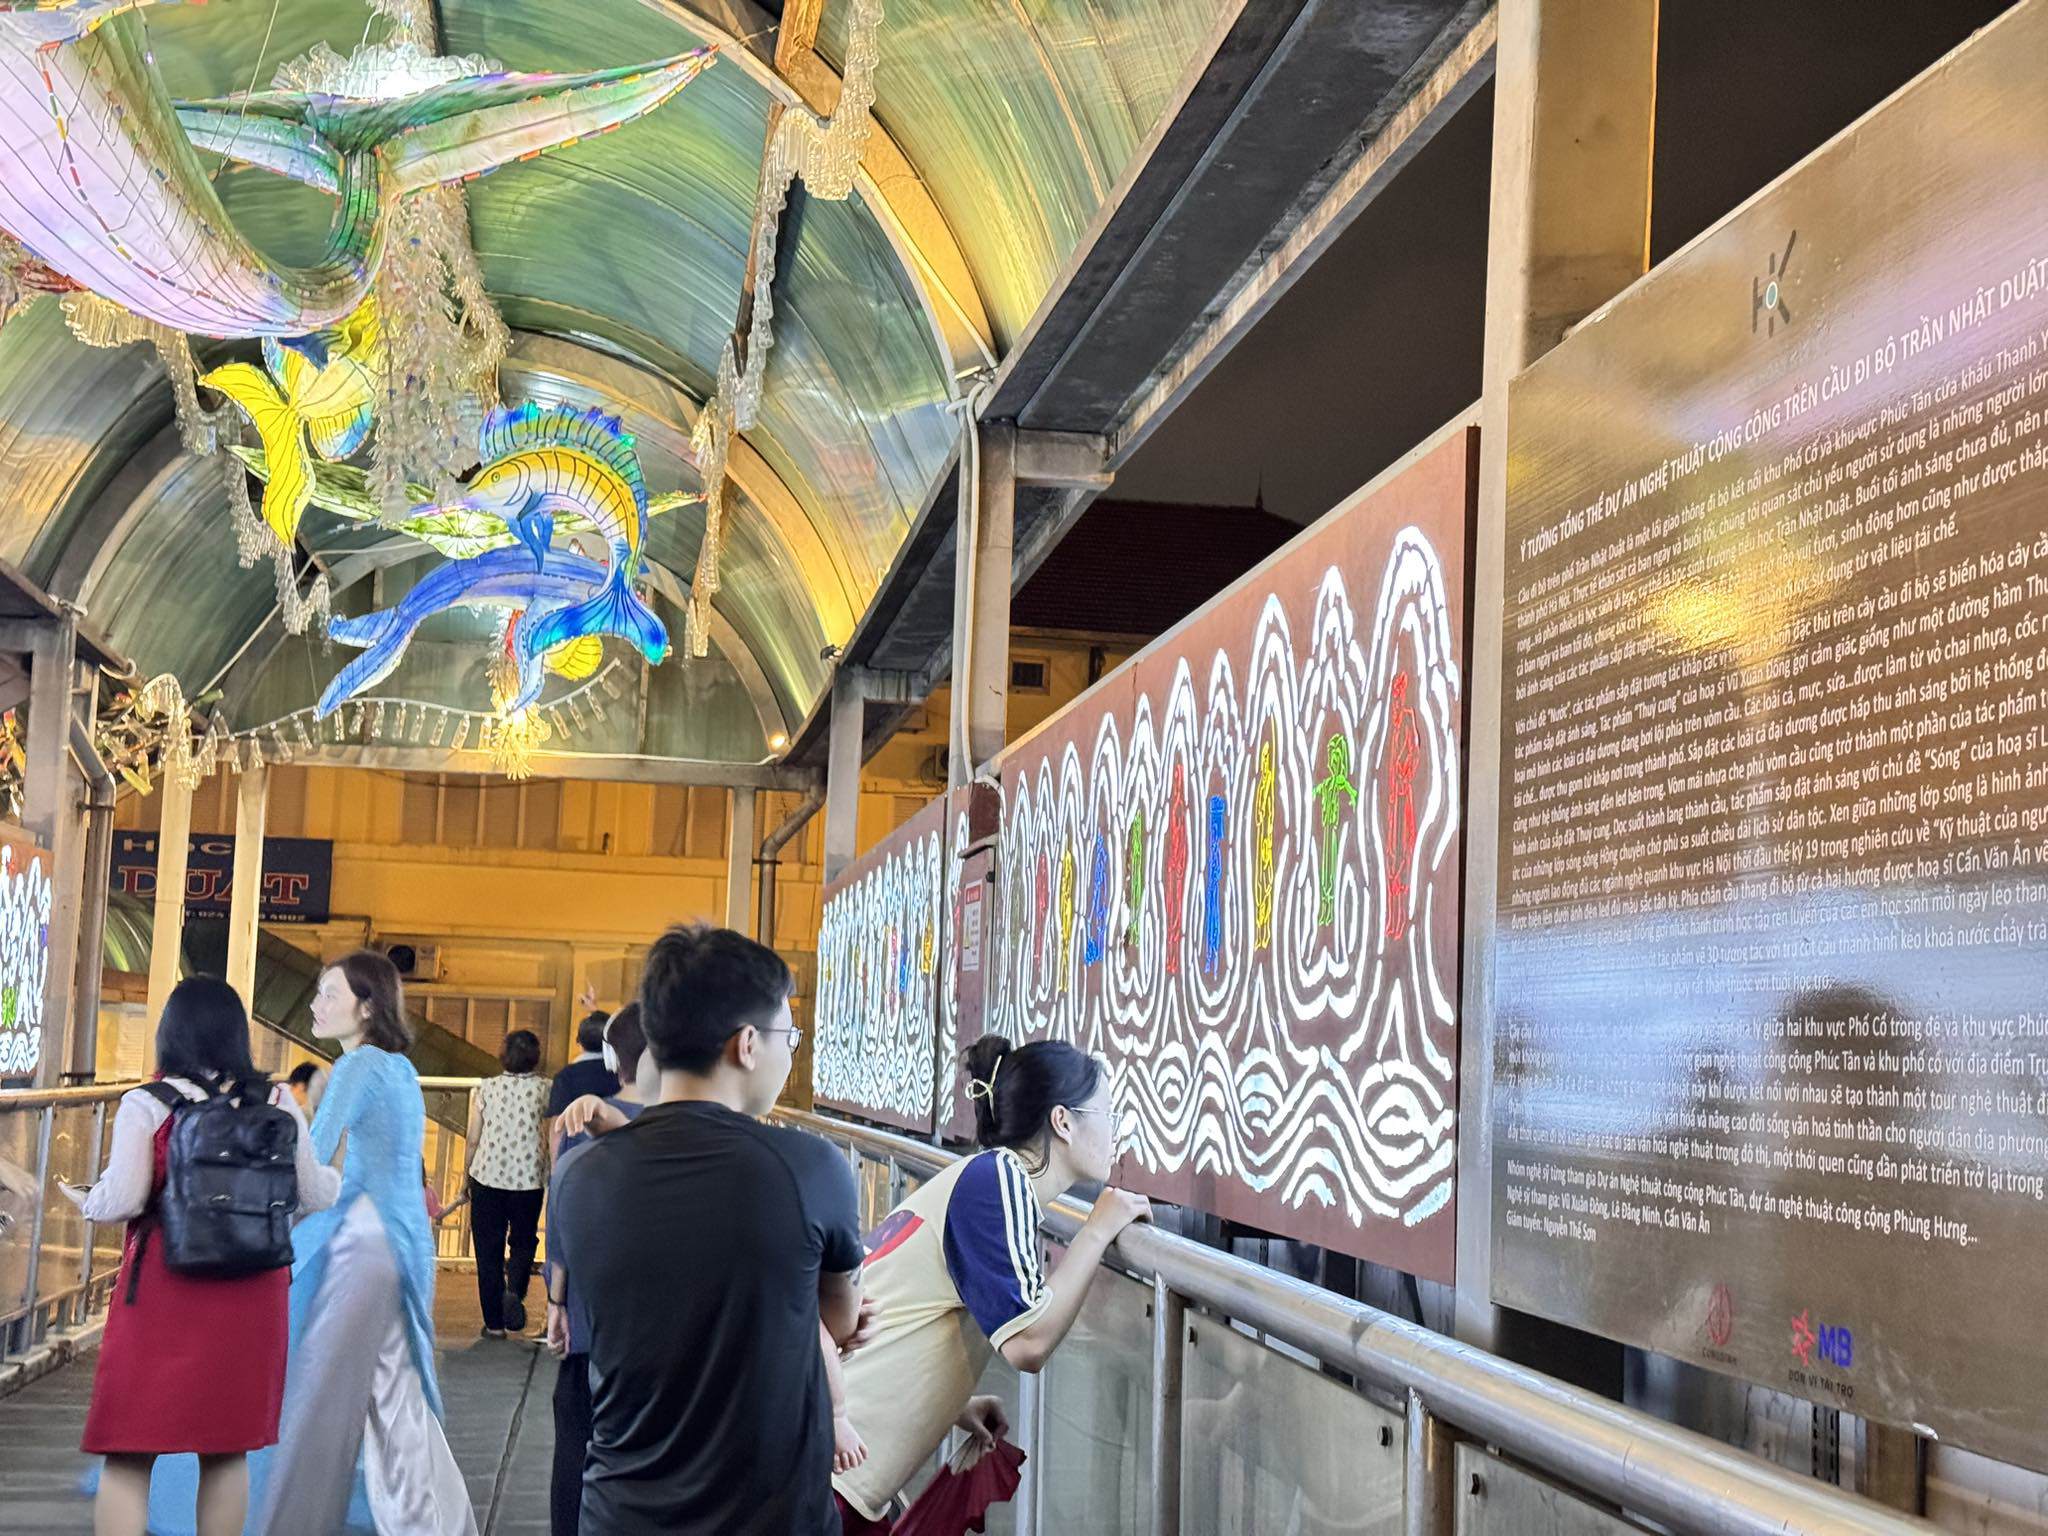 Dự án cải tạo, trang hoàng trên cầu đi bộ Trần Nhật Duật được thực hiện bởi nhóm họa sĩ từng tham gia nhiều dự án công trình công cộng nghệ thuật như phố Phúc Tân, phố Phùng Hưng...